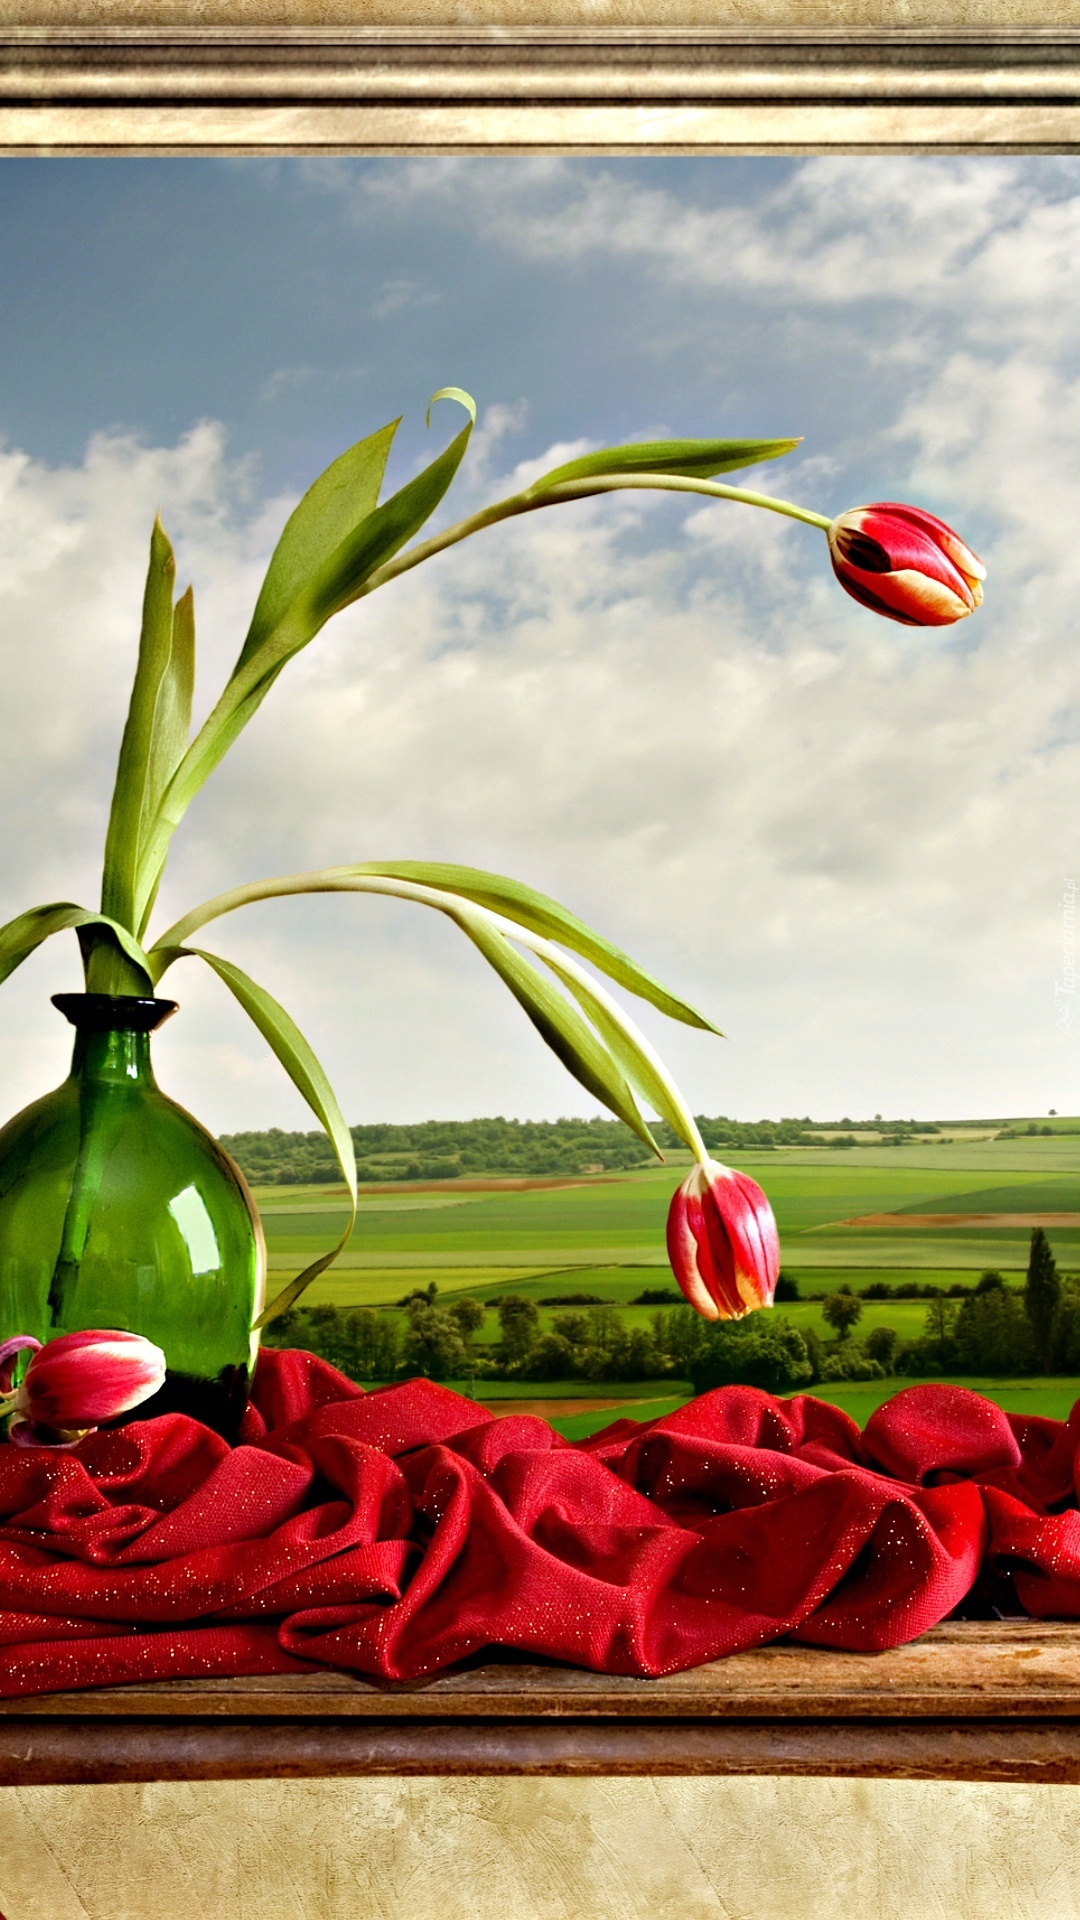 Pochylone tulipany w wazonie